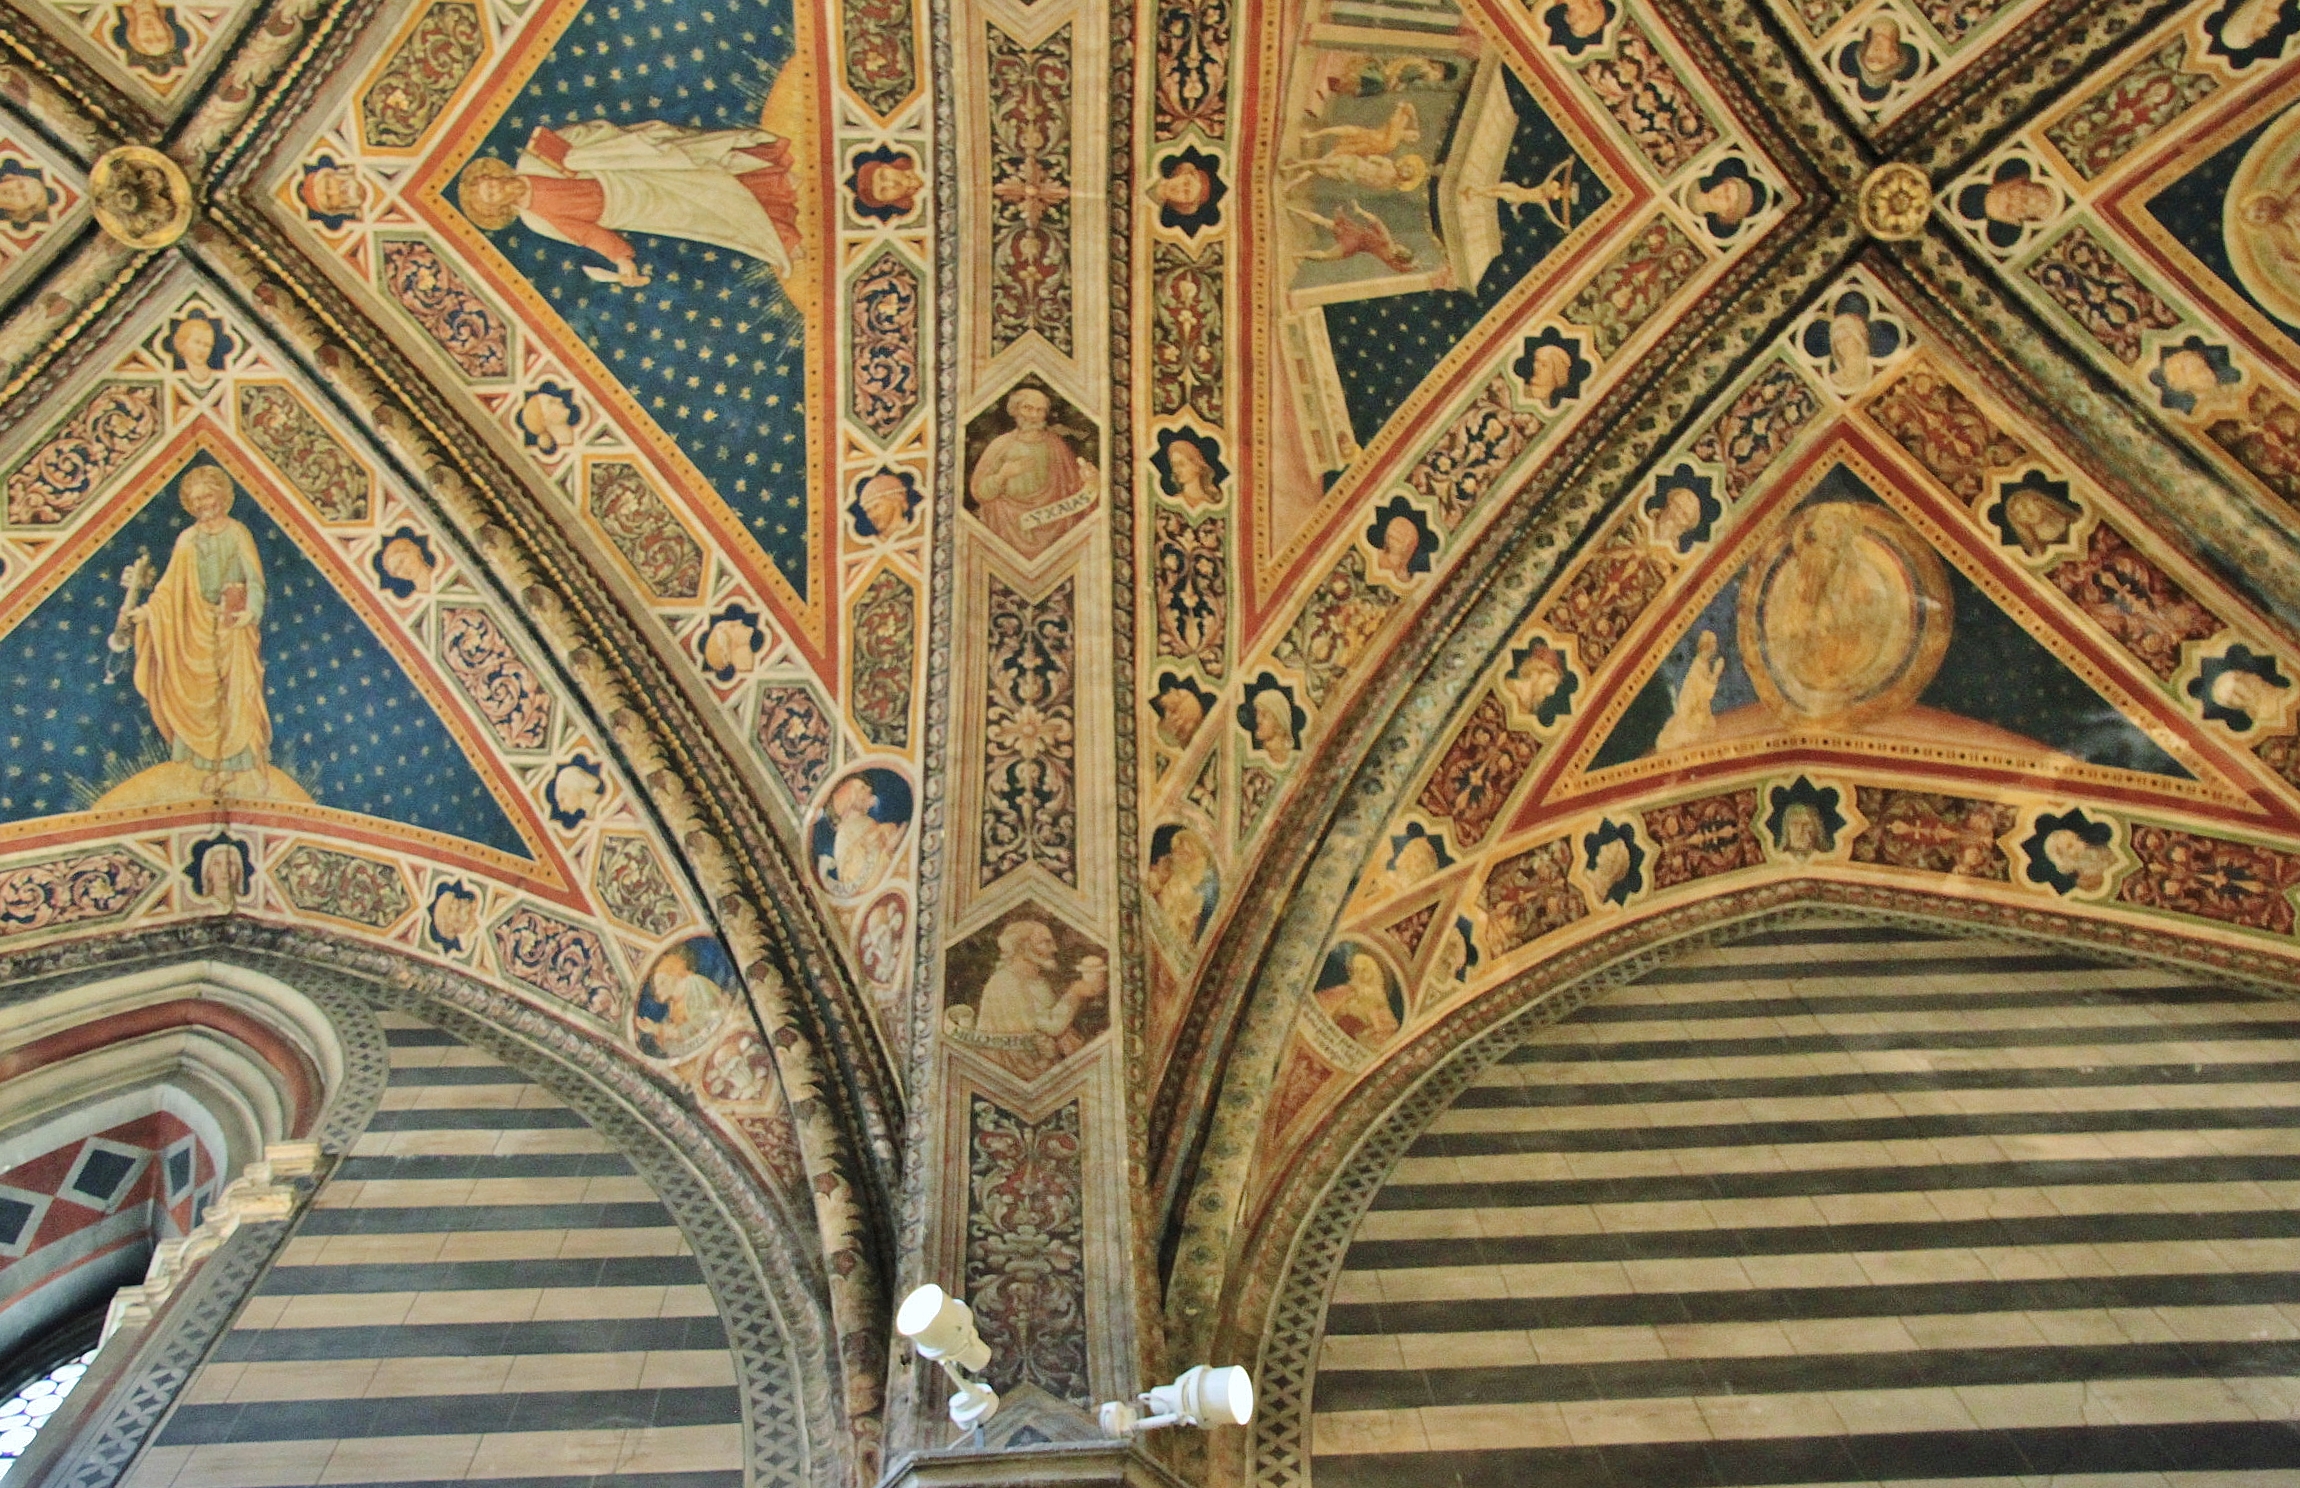 Foto: Baptisterio - Siena (Tuscany), Italia